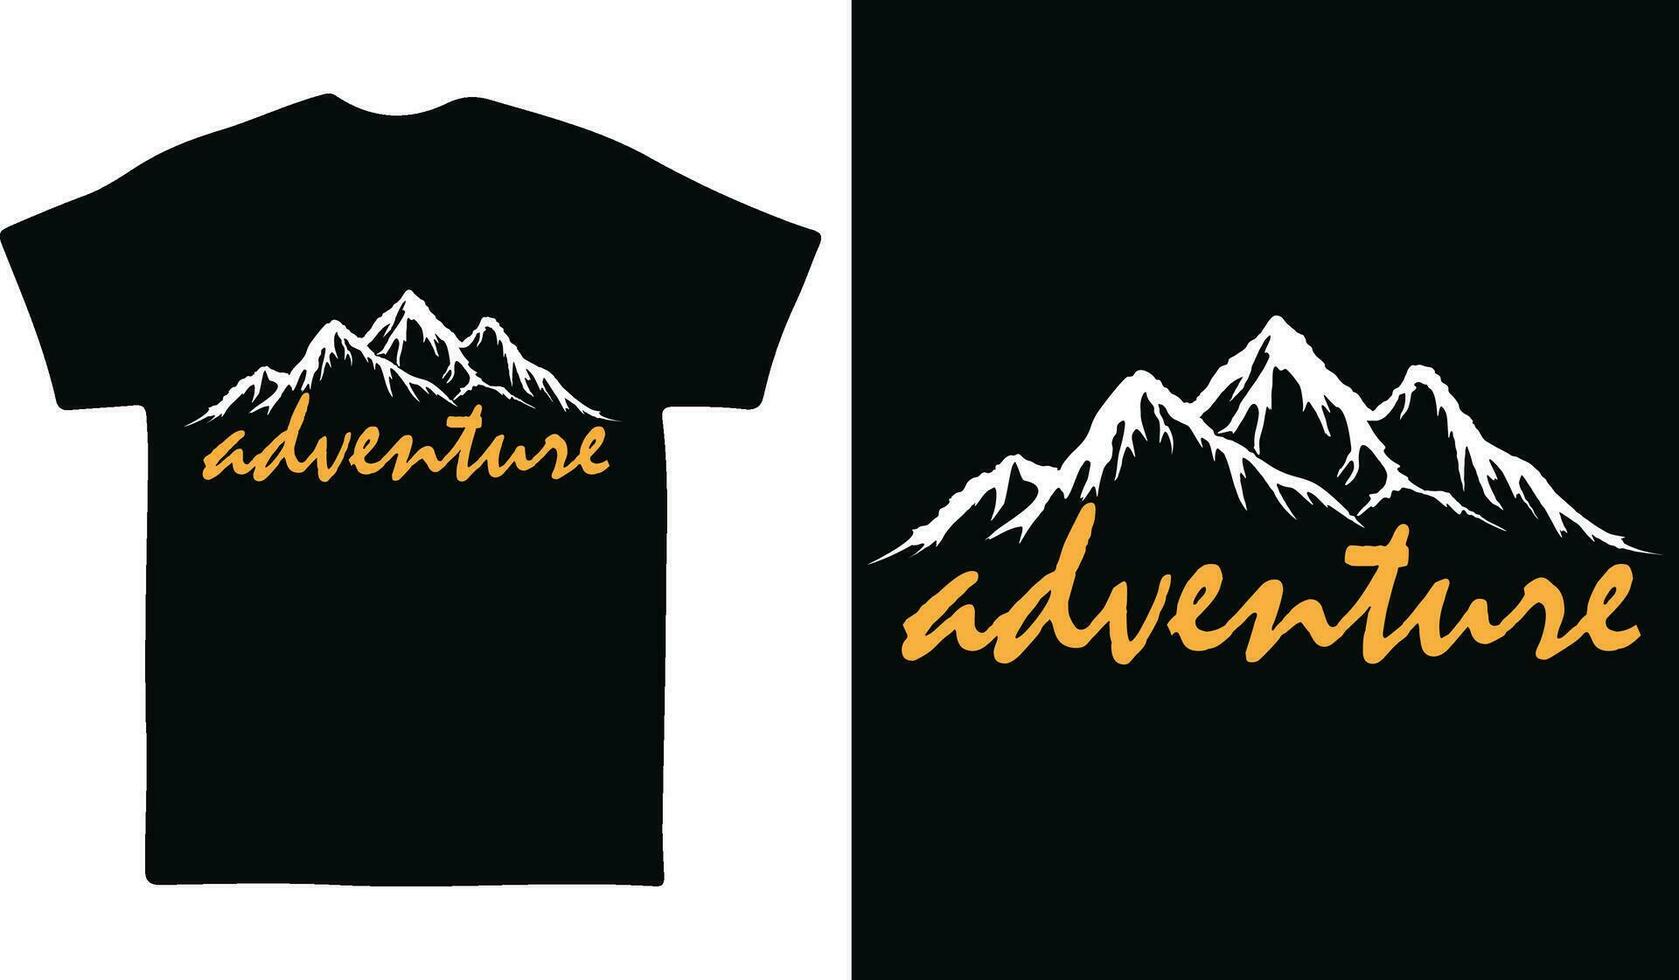 de berg zijn roeping en ik moet Gaan avontuur t-shirt ontwerp vector